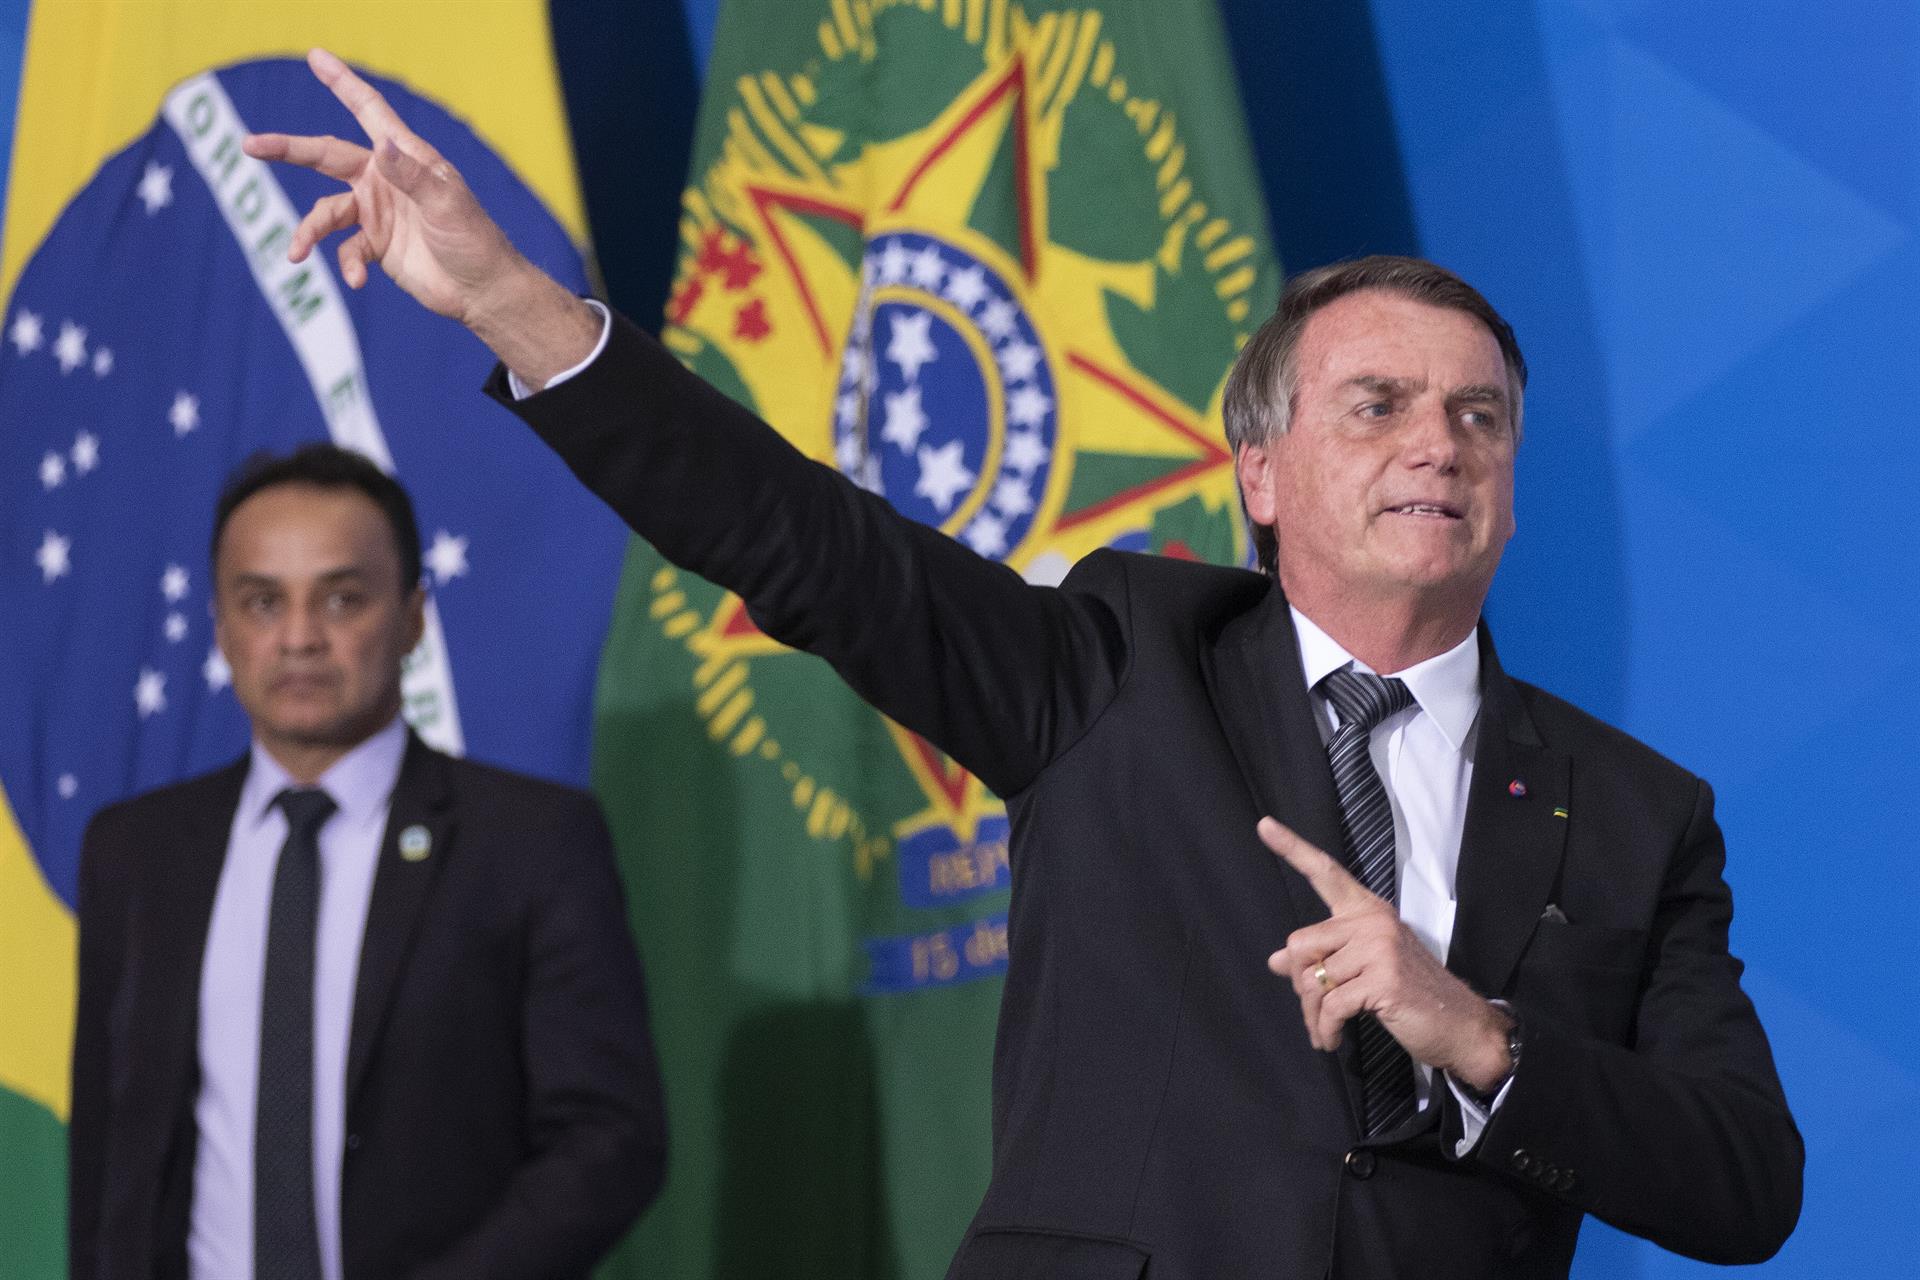 “El ladrón no volverá a la escena del crimen": Bolsonaro contra Lula